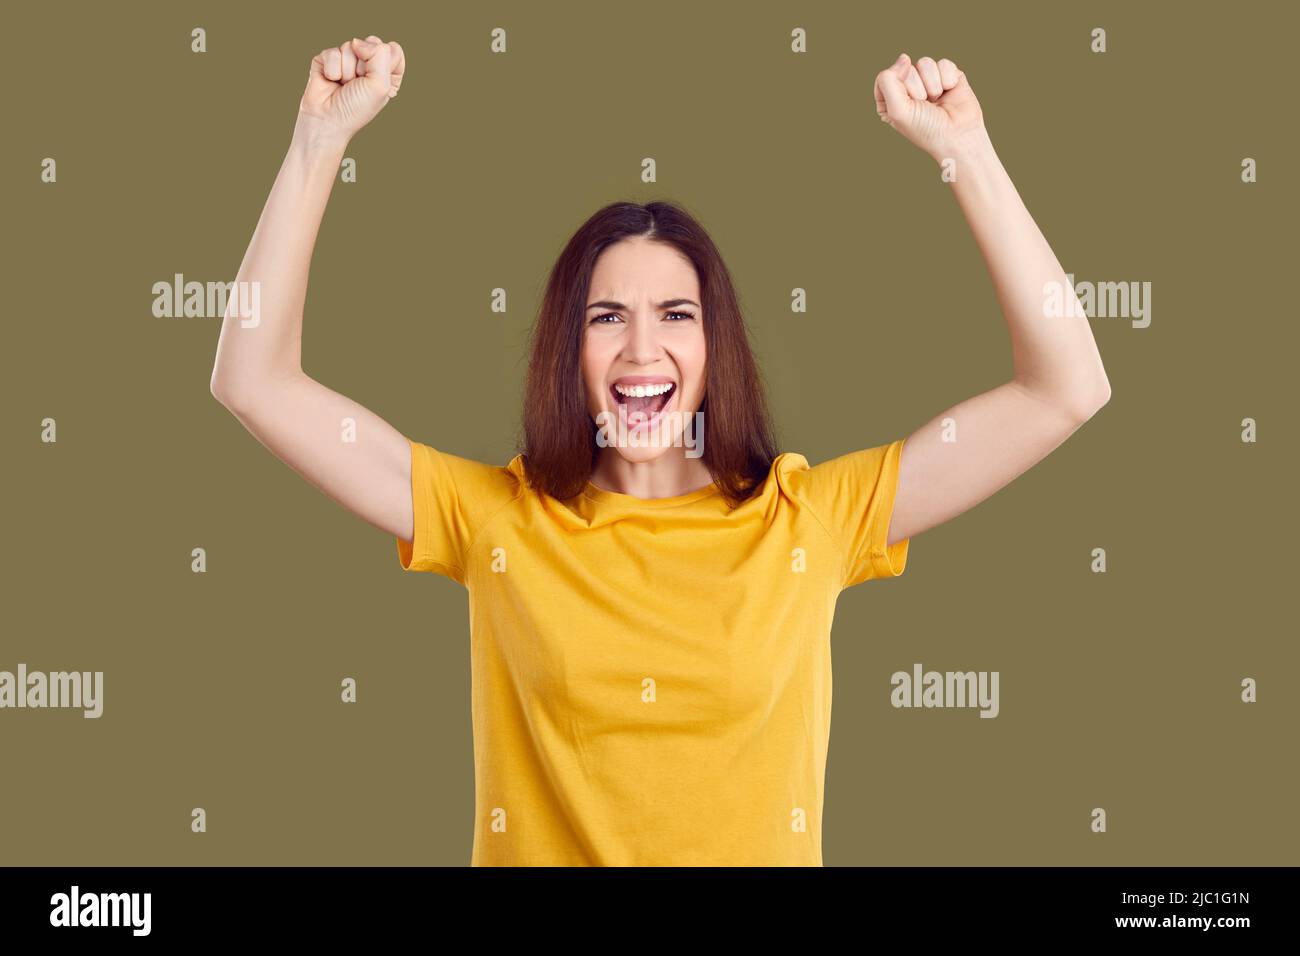 Verrückte glückliche Frau freut sich aufrichtig über ihren Erfolg und Triumph auf khaki Hintergrund. Stockfoto